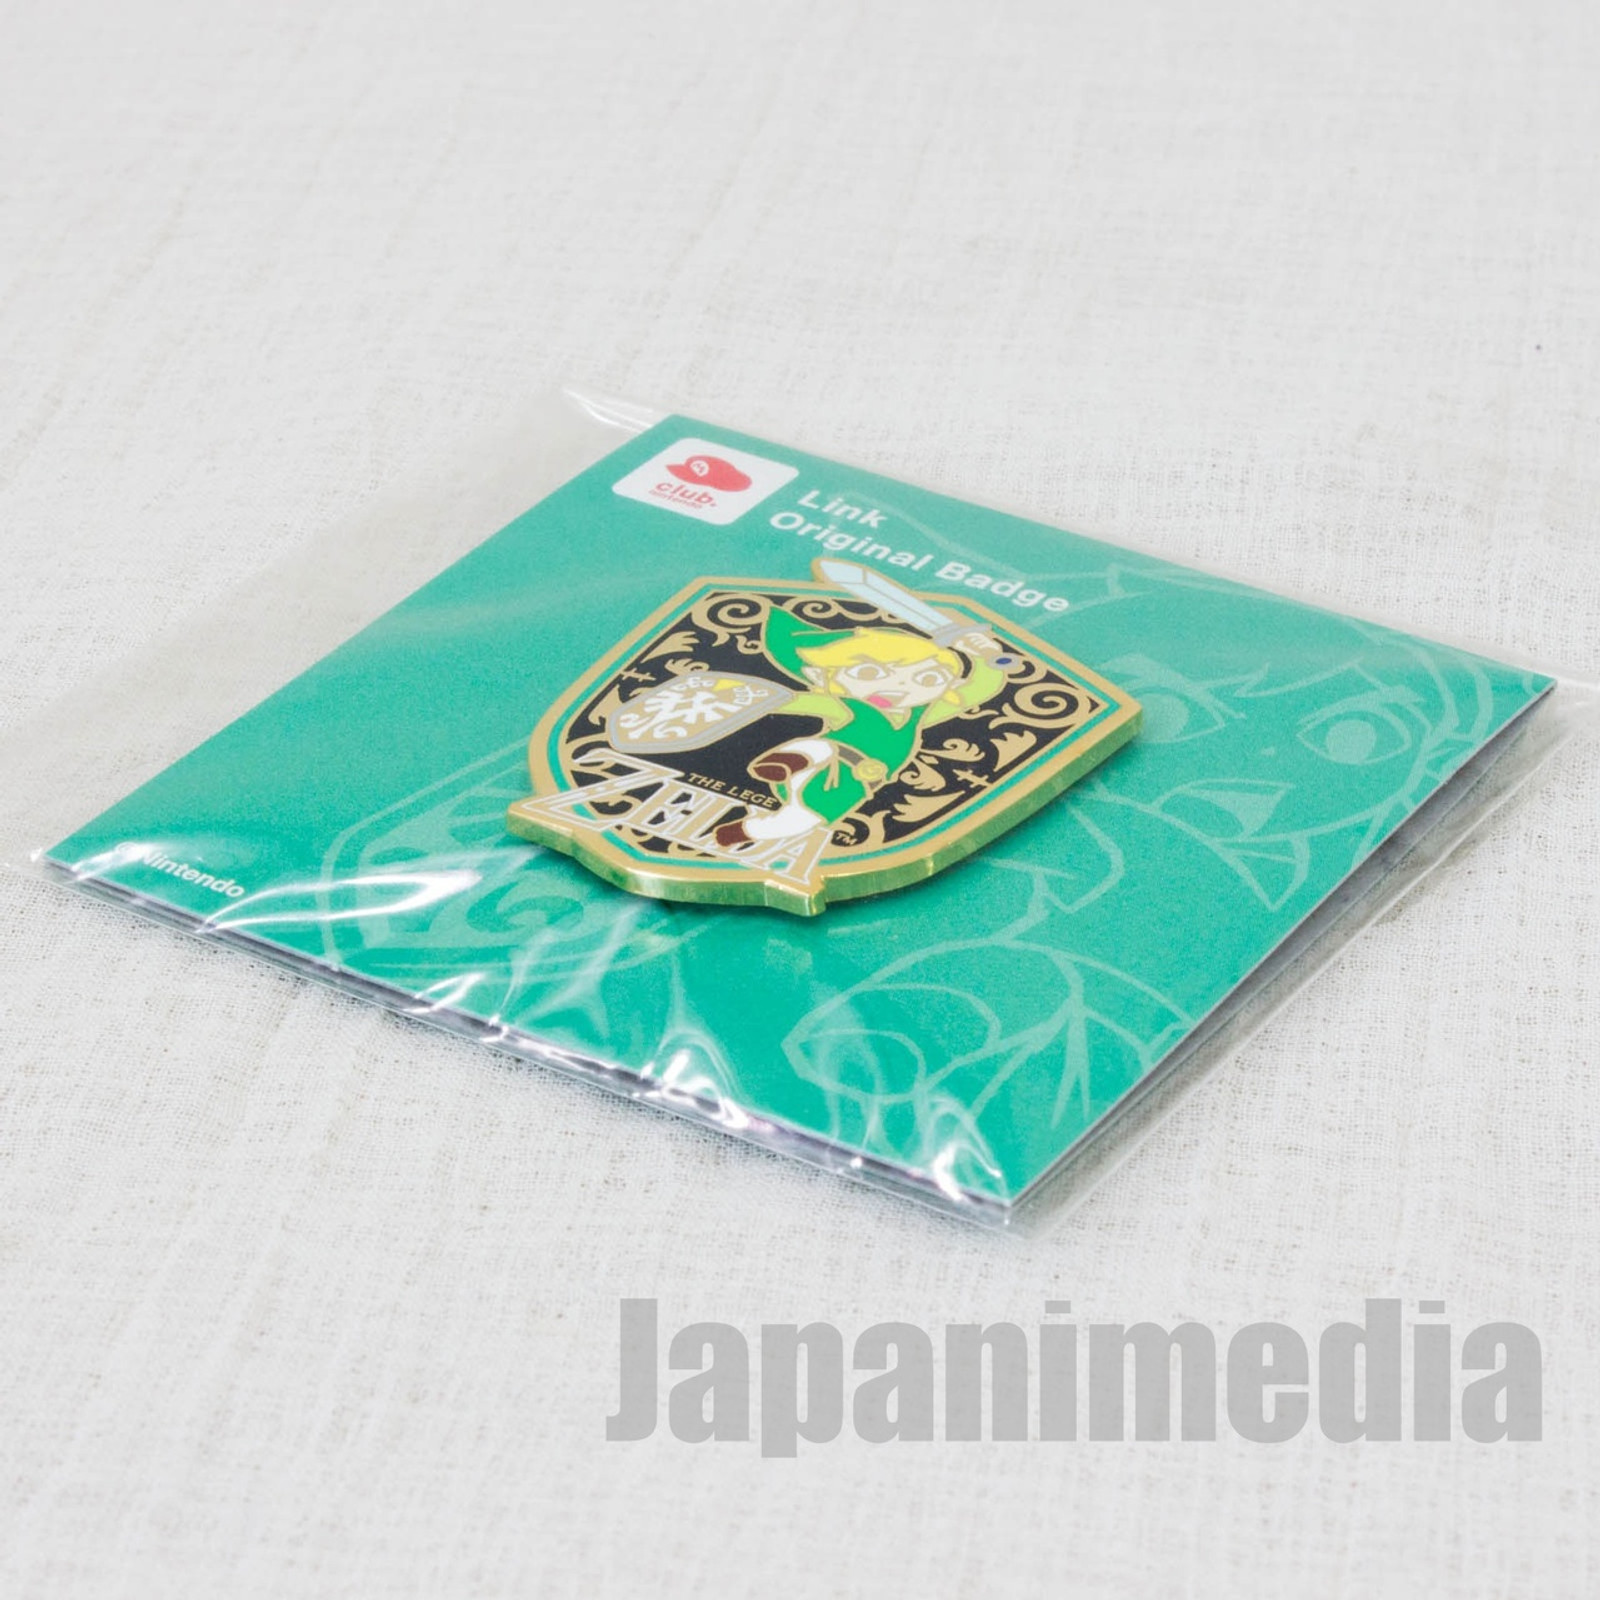 RARE! Legends of Zelda LINK Original Badge Pins Club Nintendo JAPAN FAMICOM